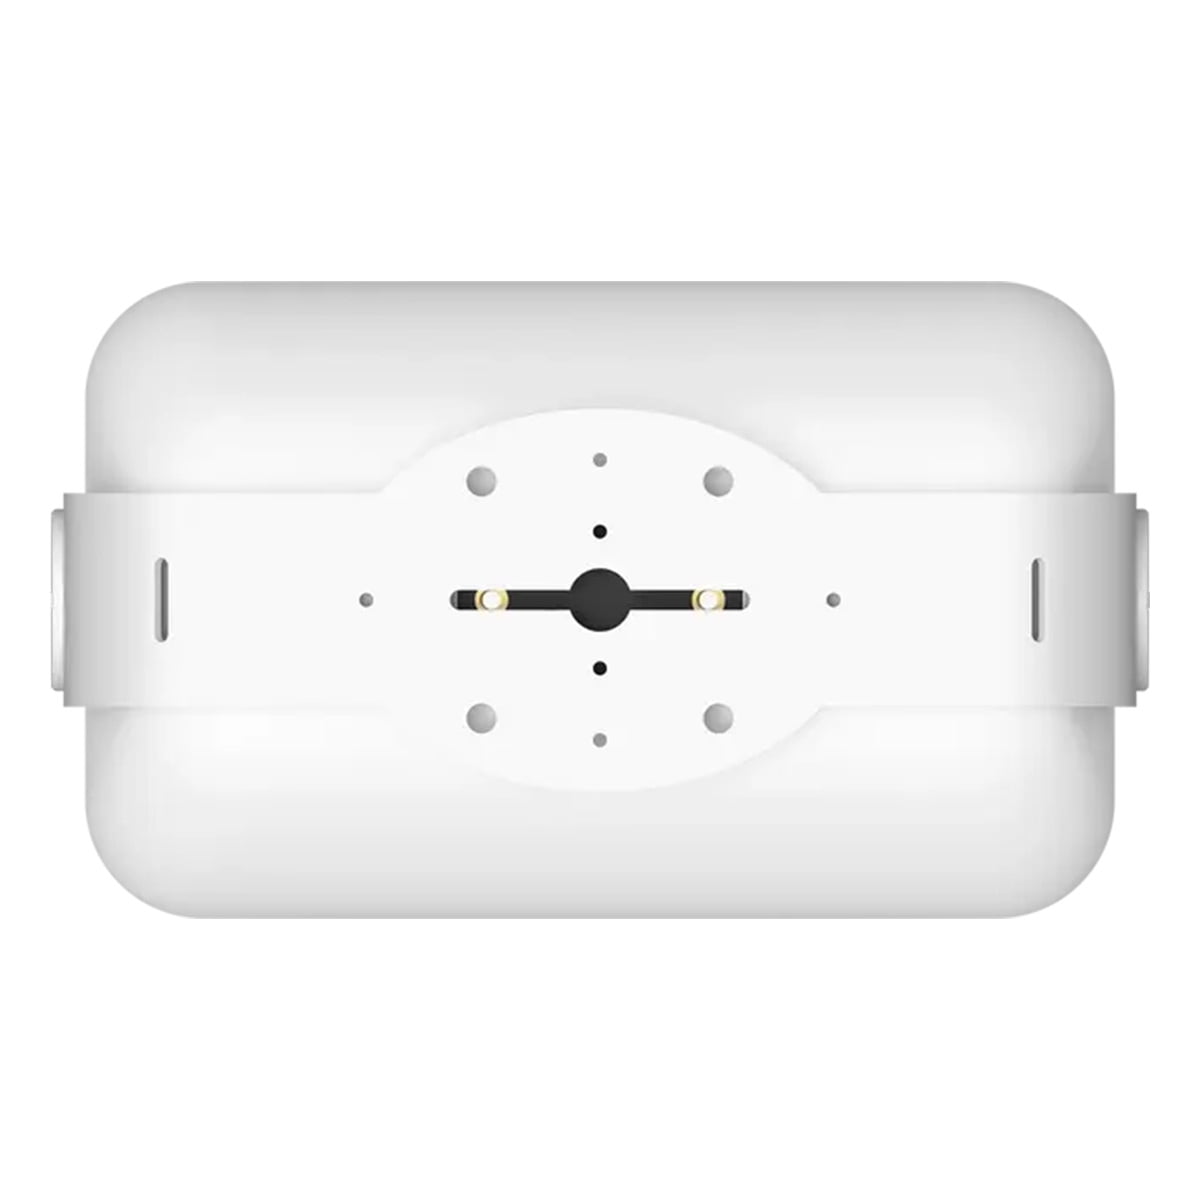 Stroomopwaarts maaien verdacht Sonos Outdoor Waterproof Architectural Speakers - Pair (White) - Walmart.com